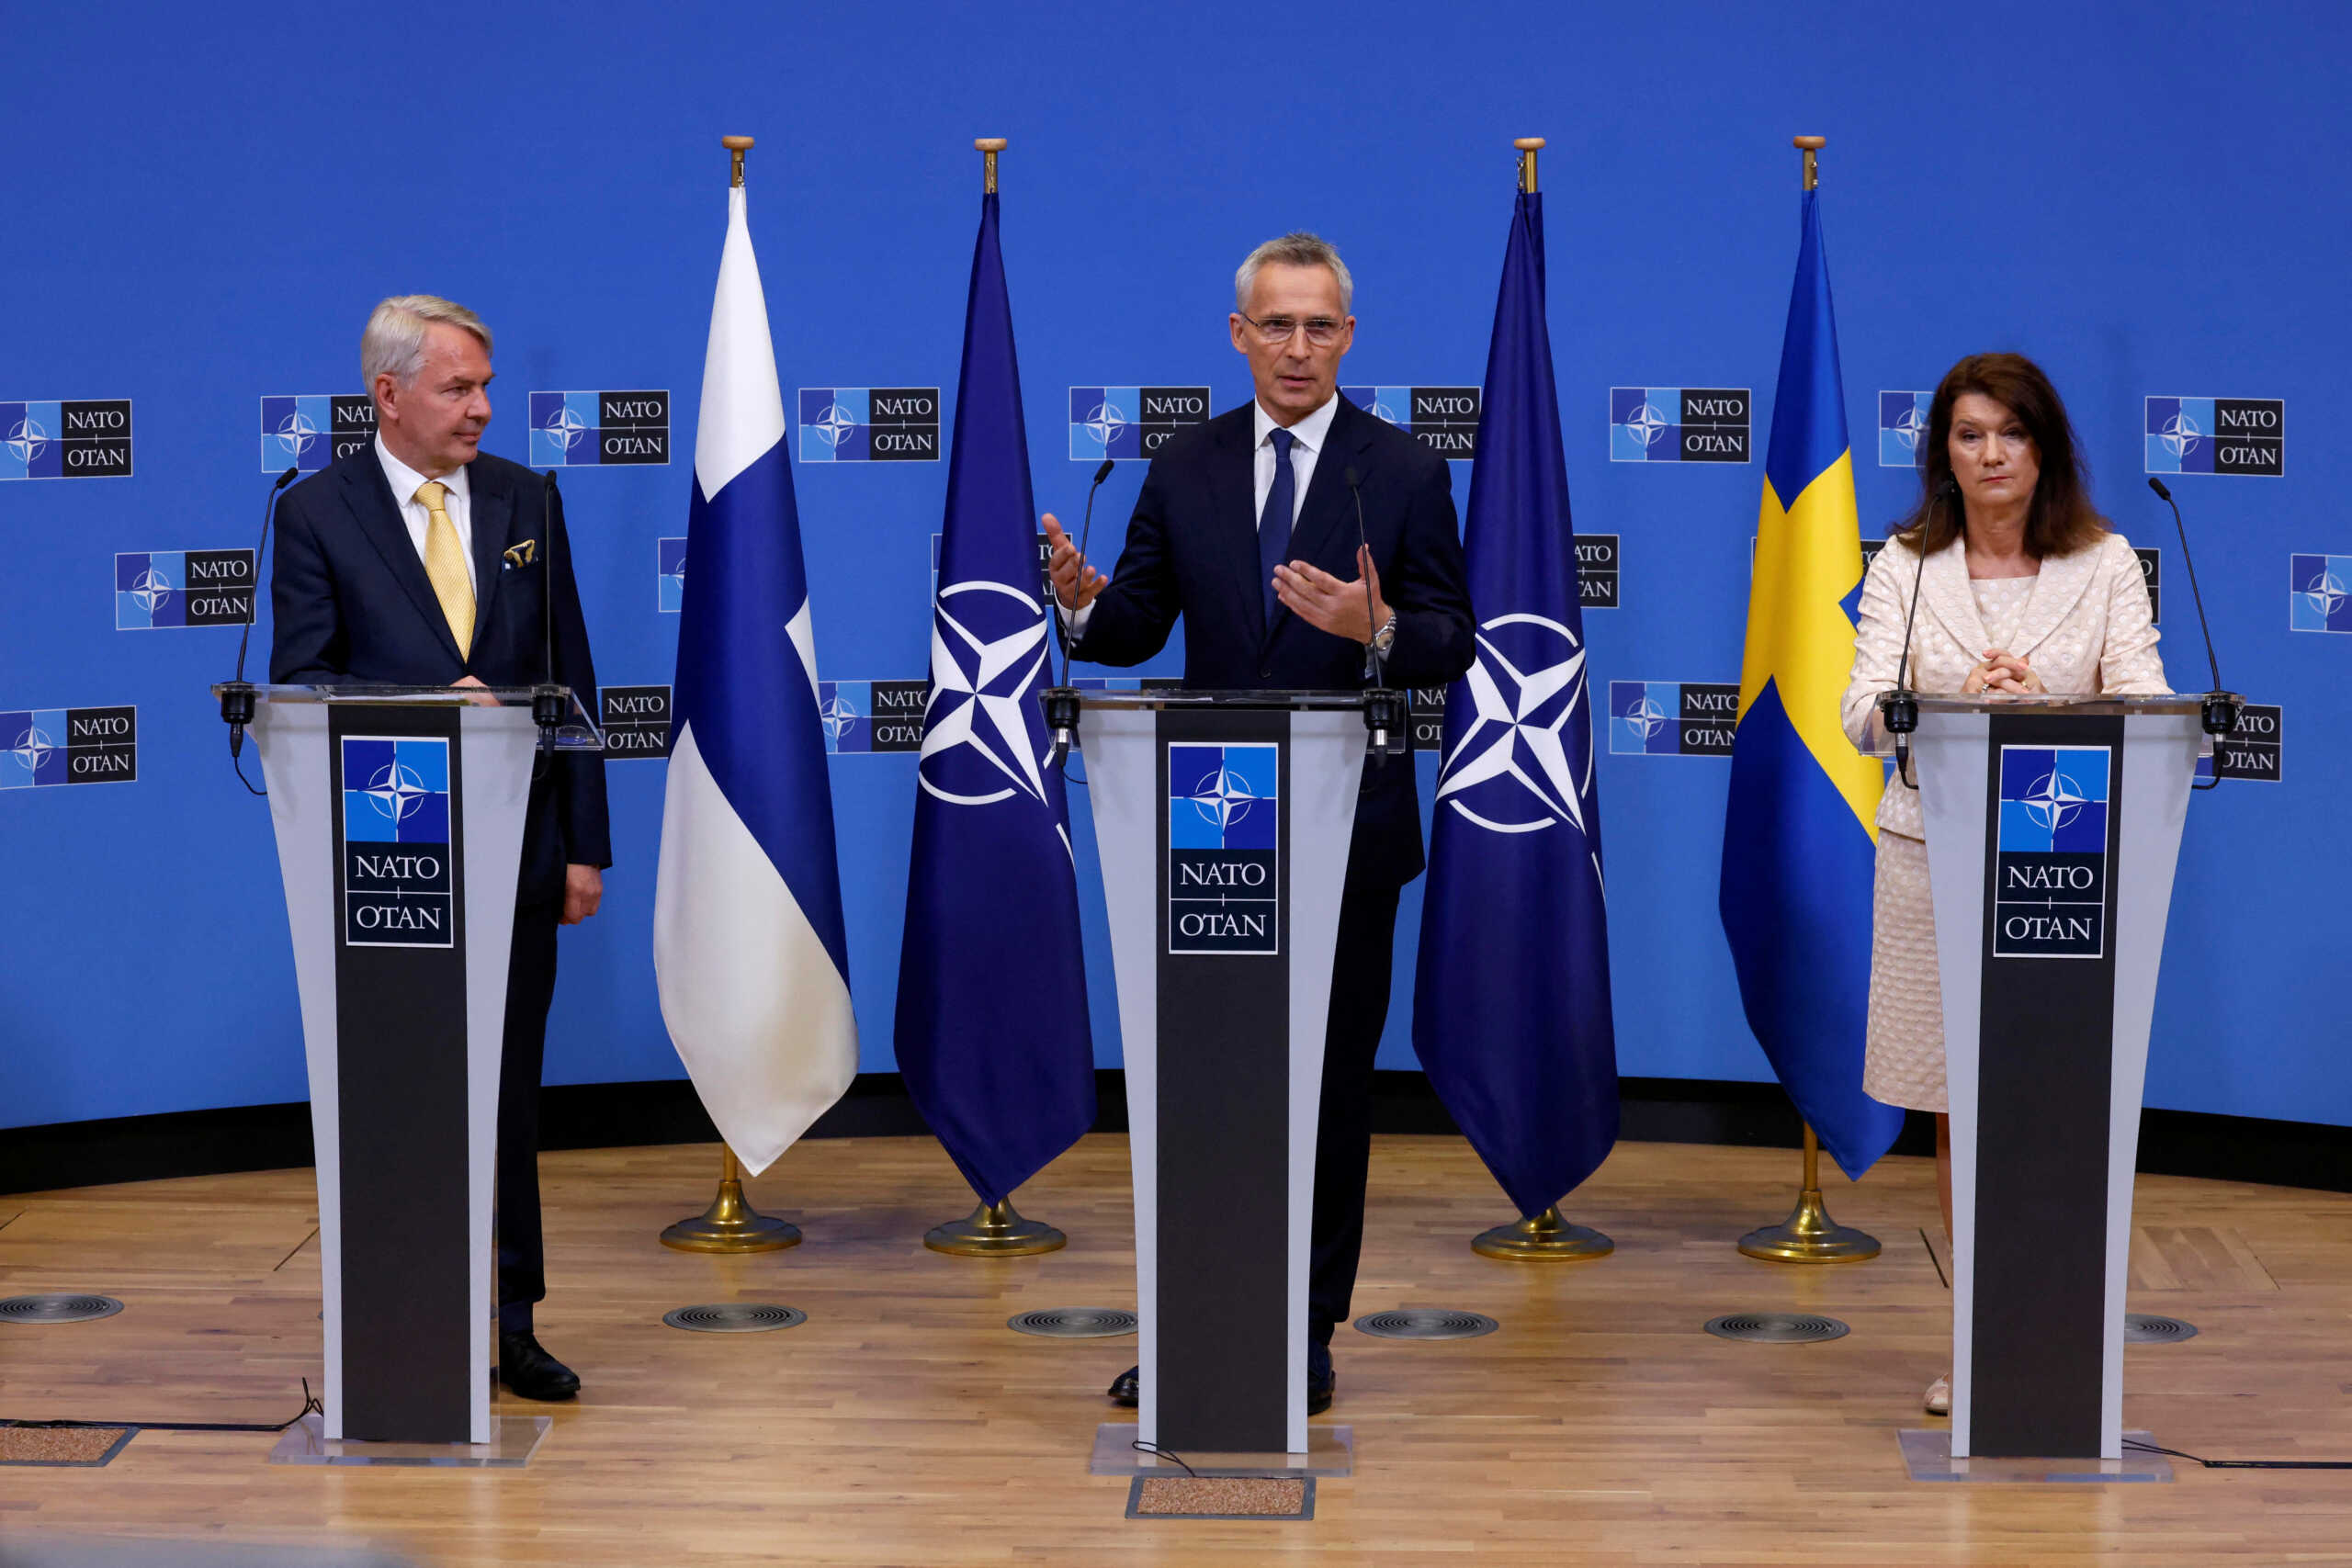 Нато аналитика. Швеция в НАТО. Финляндия в НАТО. Финляндия и Швеция в НАТО. Вступление Эстонии в НАТО.